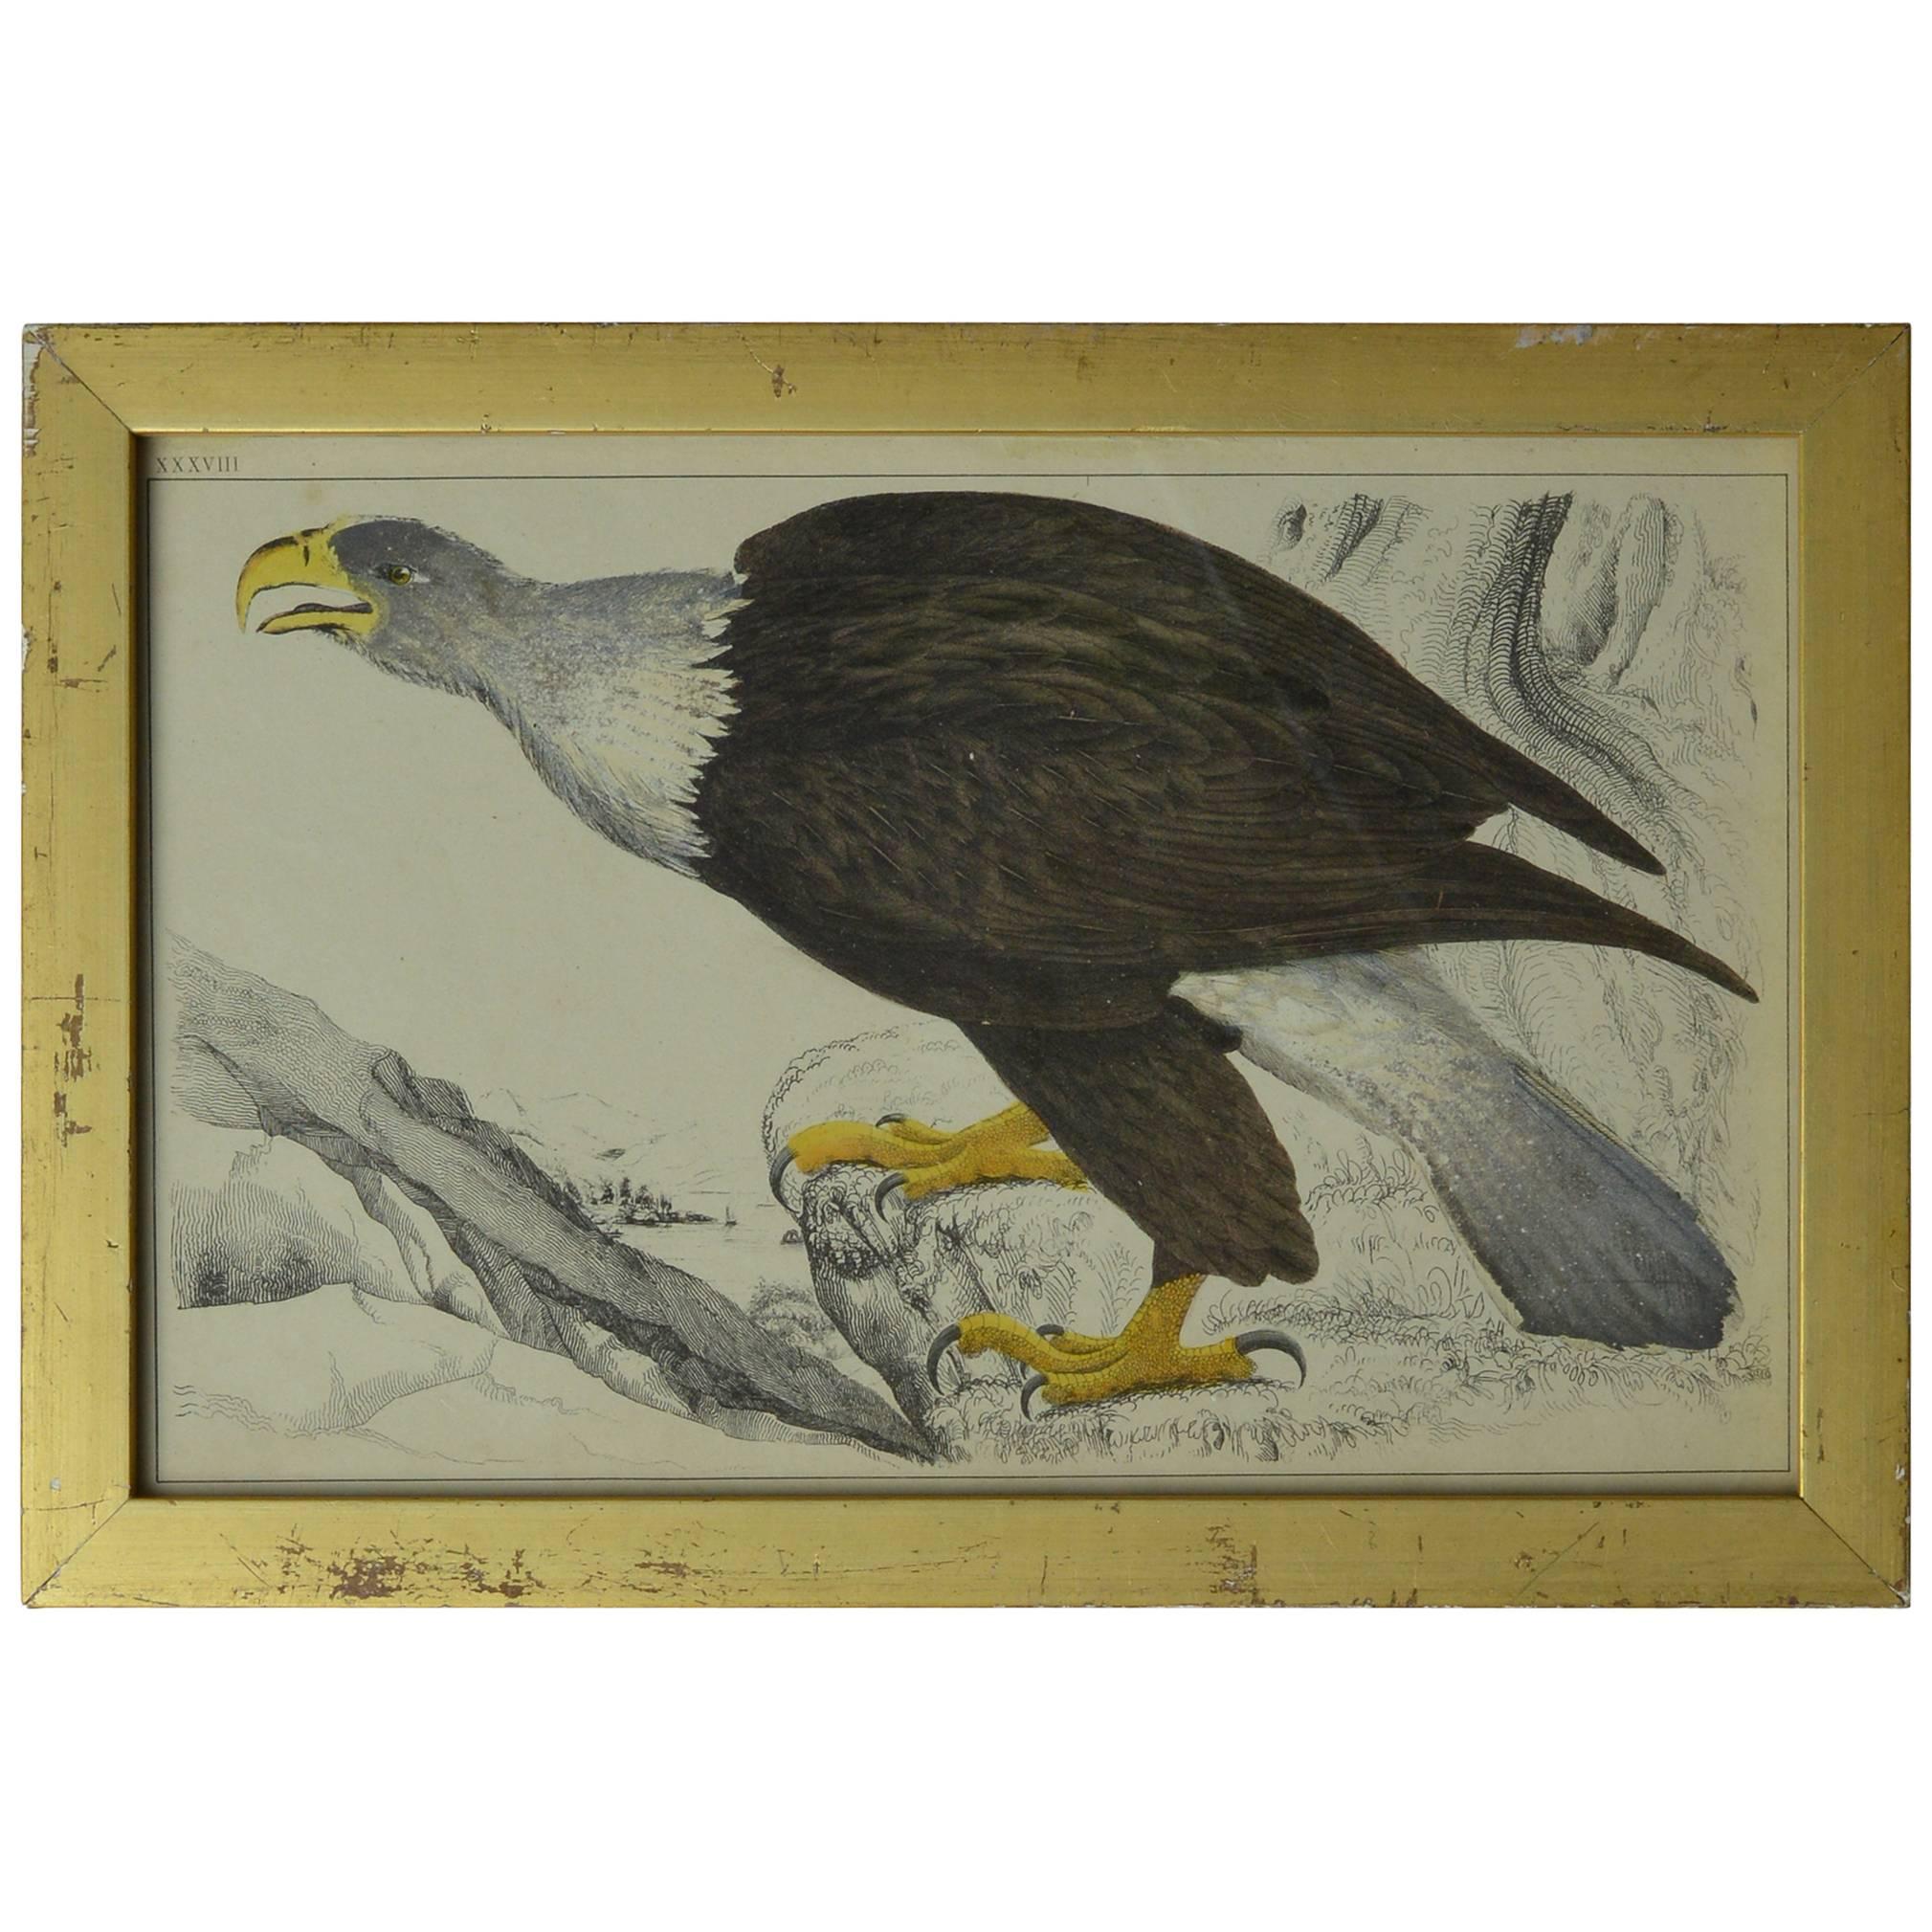 Original Antique Print of an Eagle, 1847